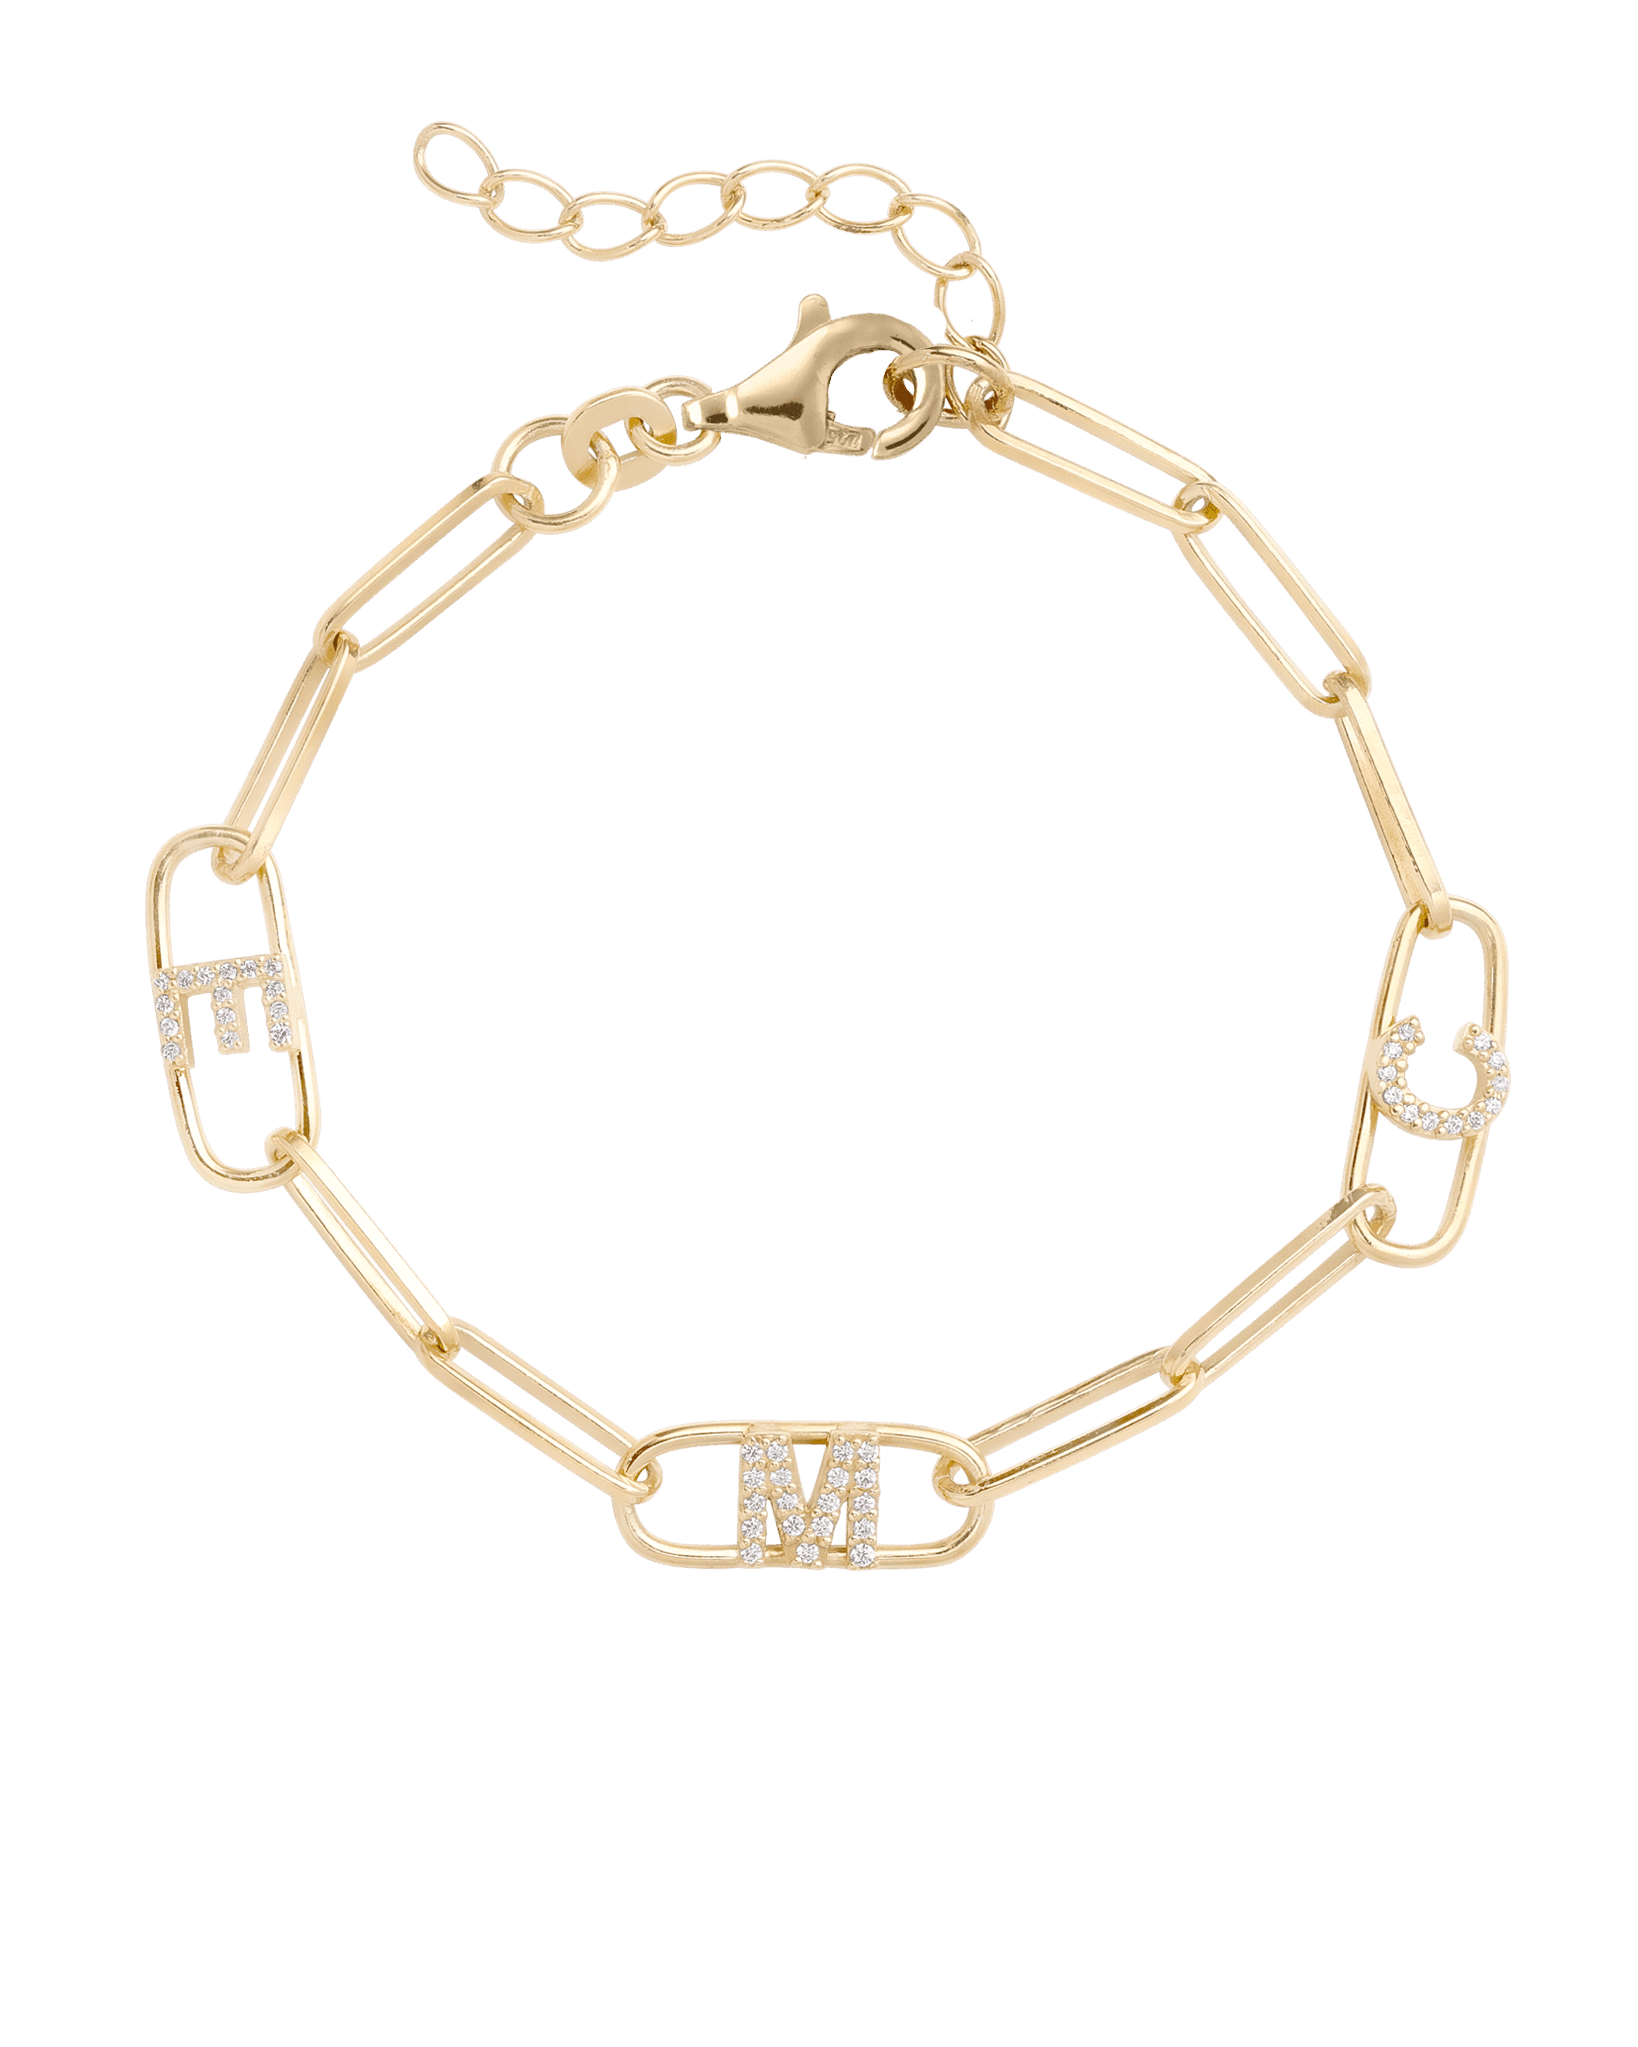 Bracelet Liens Initiale(s) - Or Jaune Plaqué 18 carats Bracelets magal-dev 1 Initiale 6" + 1" Extension de chaîne 